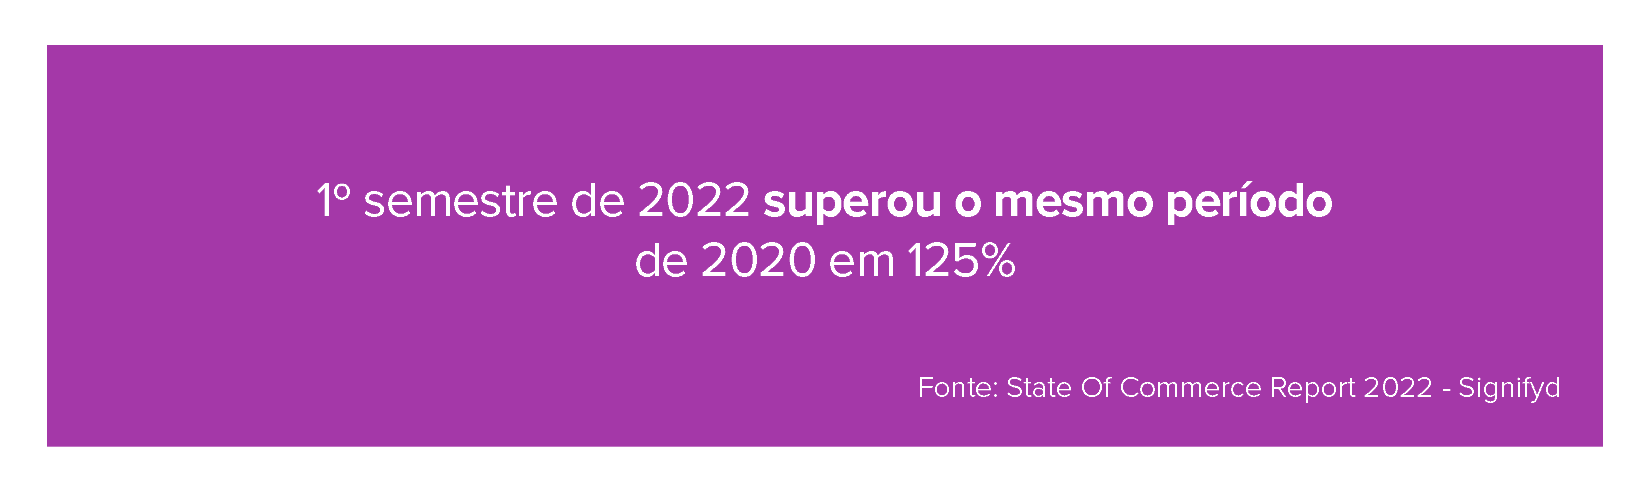 1º semestre de 2022 superou o mesmo período de 2020 em 125%